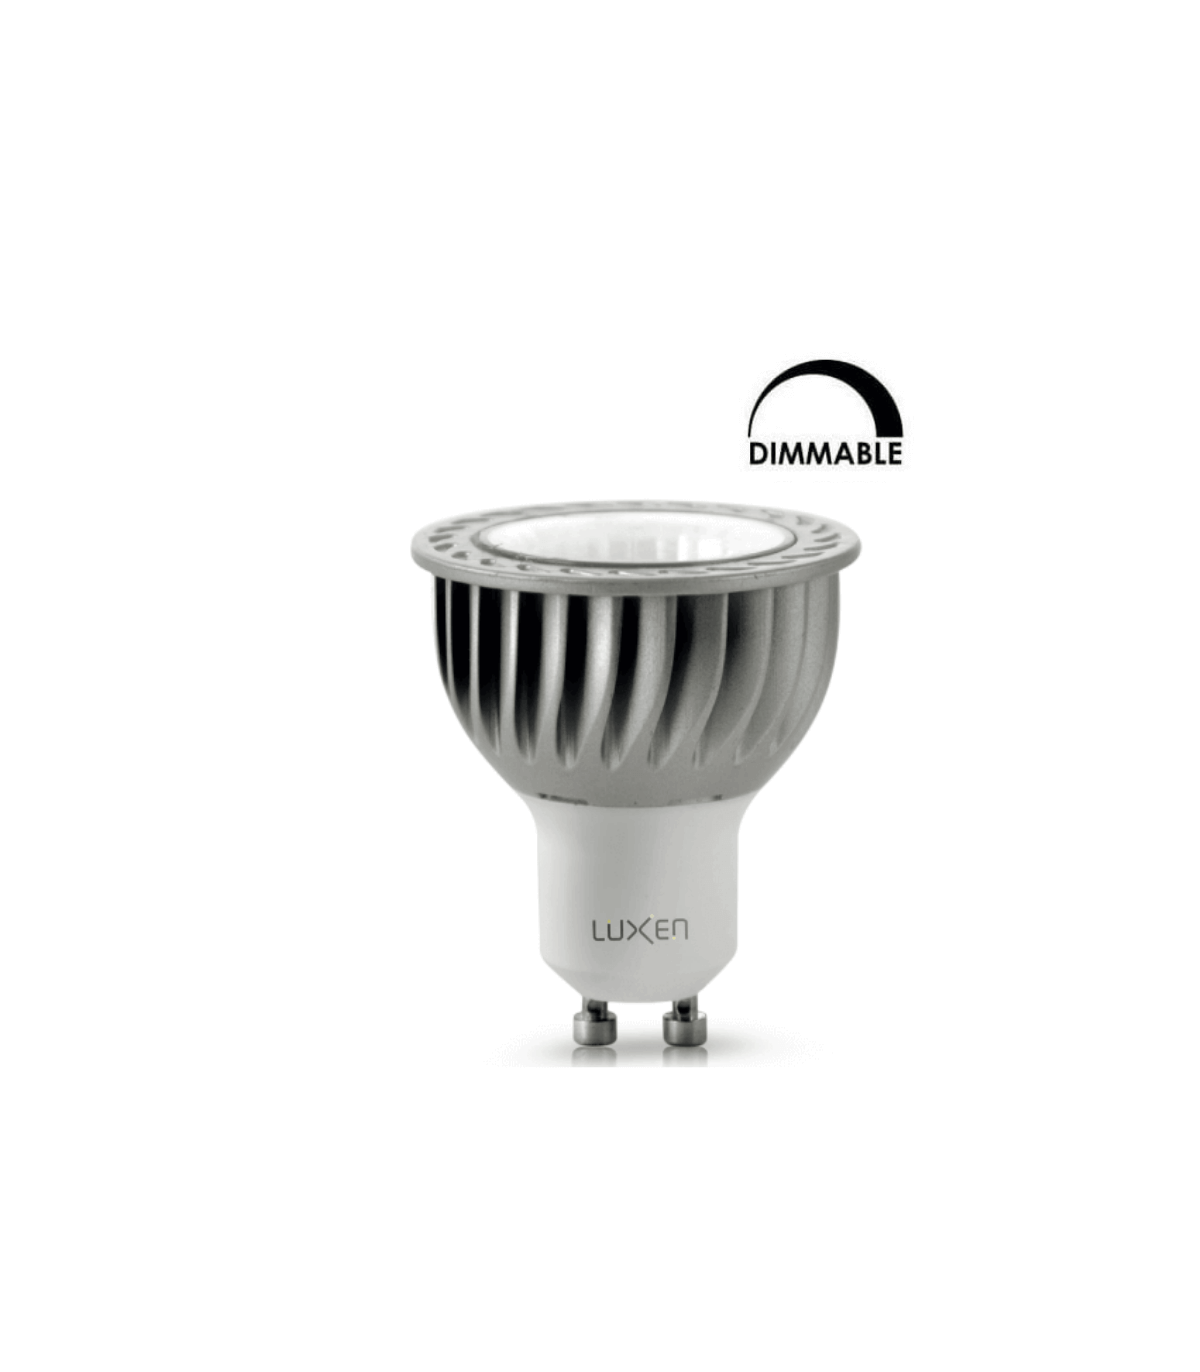 Ampoule LED LUXEN PAR16 6W substitut 42W 450 lumens 5900K dimmable GU10